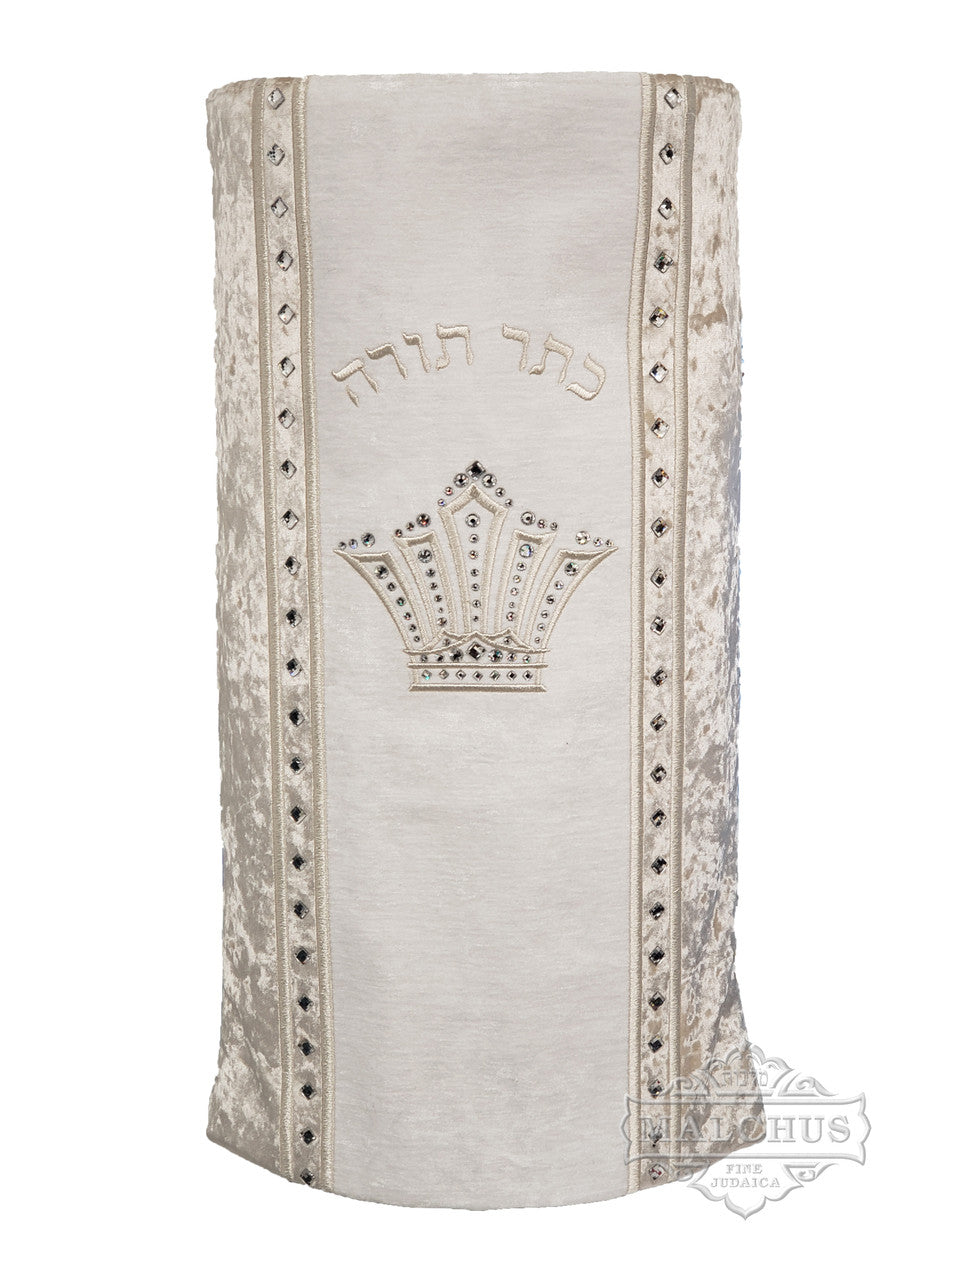 Sefer Torah Mantel #18-5